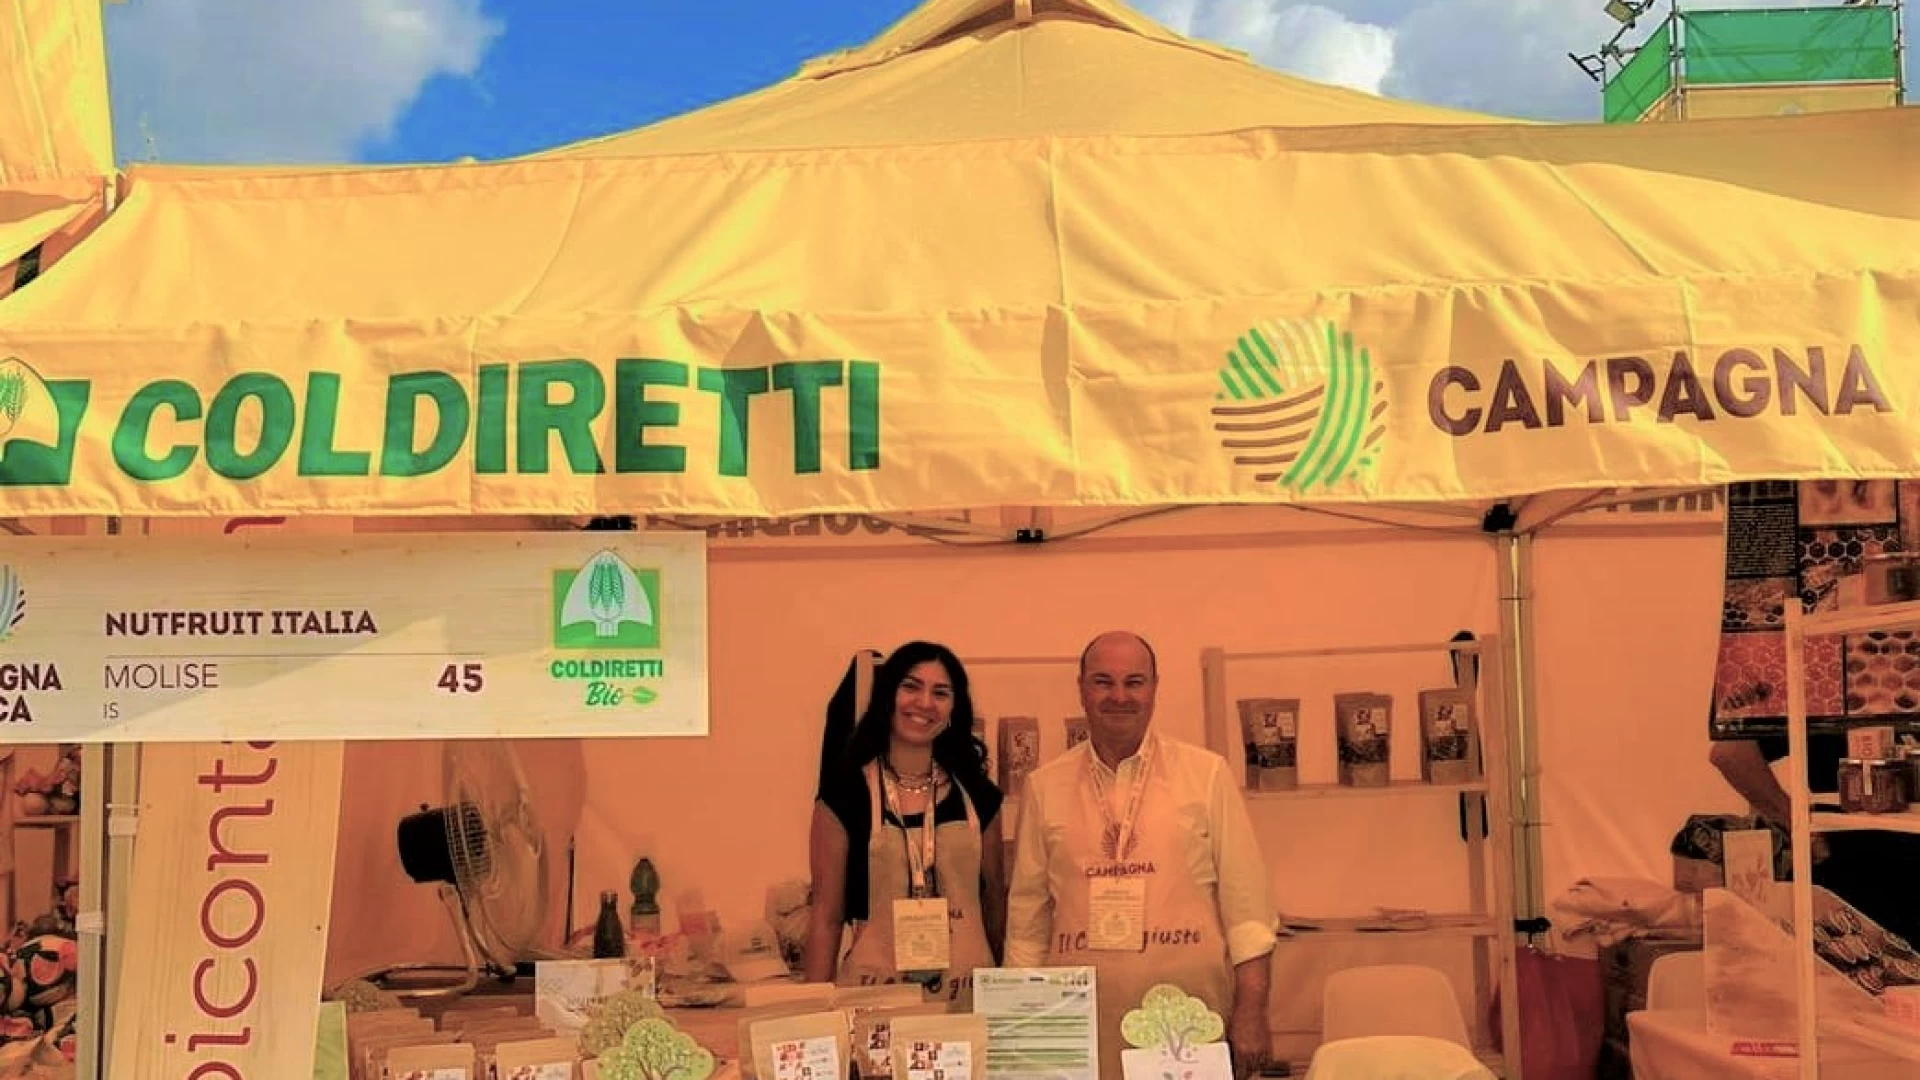 Villaggio Coldiretti di Roma: Molise protagonista con aziende e giovani imprenditori. Dalla regione centinaia di visitatori hanno preso parte alla grande kermesse.